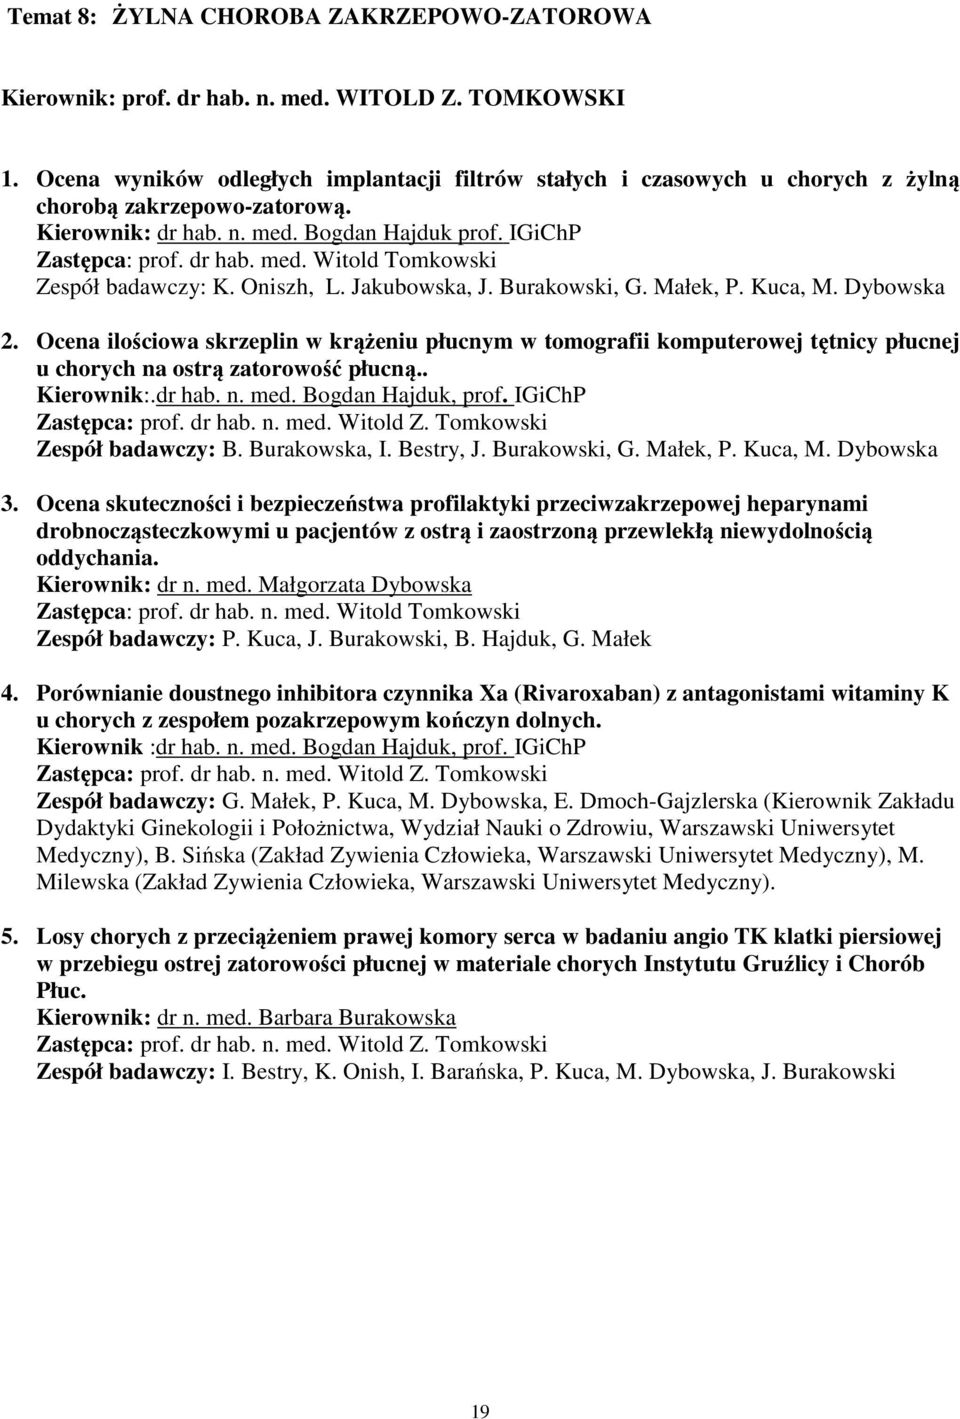 Oniszh, L. Jakubowska, J. Burakowski, G. Małek, P. Kuca, M. Dybowska 2. Ocena ilościowa skrzeplin w krążeniu płucnym w tomografii komputerowej tętnicy płucnej u chorych na ostrą zatorowość płucną.